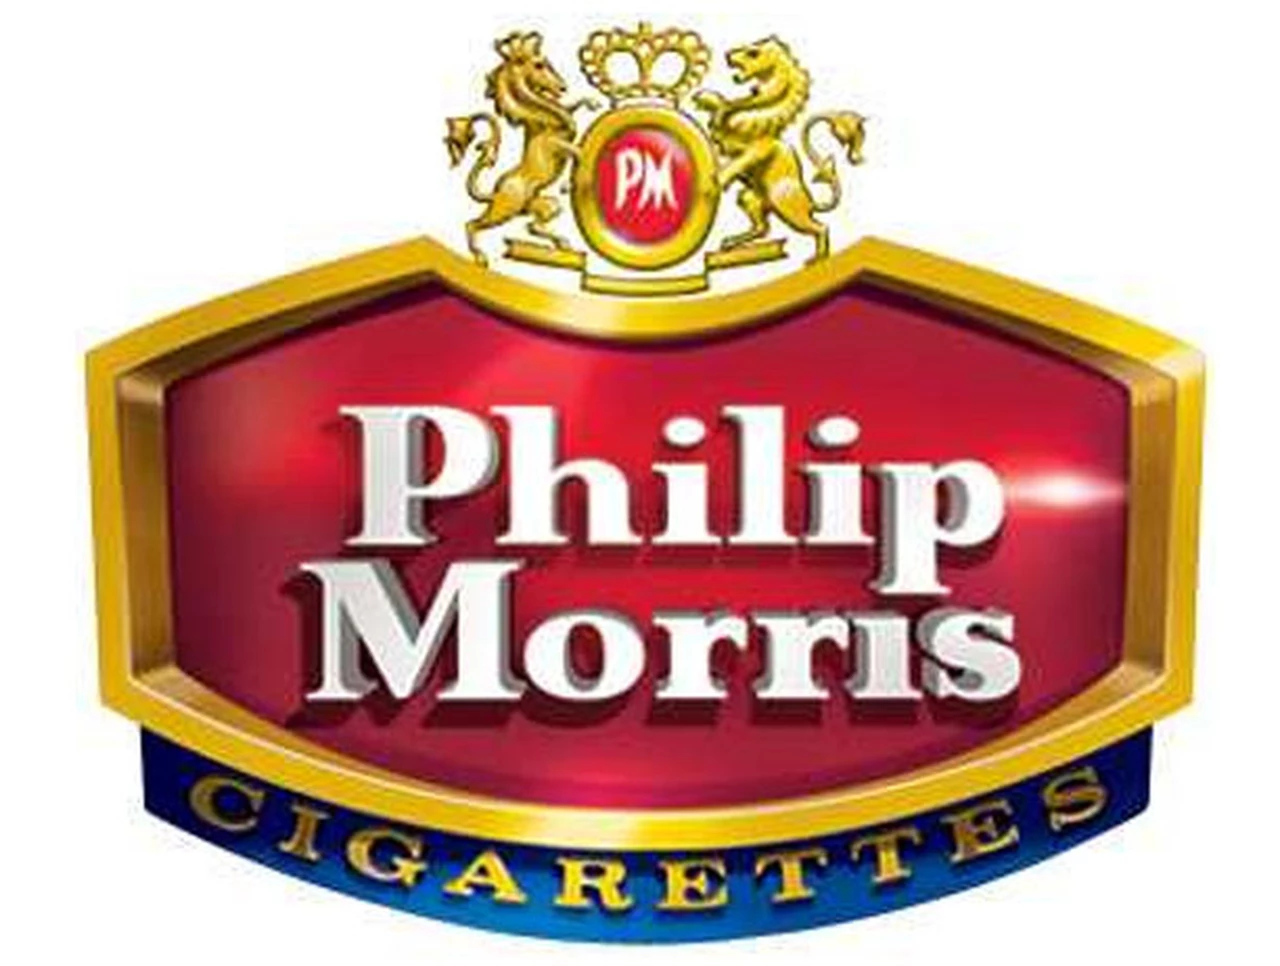 Philip Morris anunció que dejará de producir cigarrillos en todo el mundo